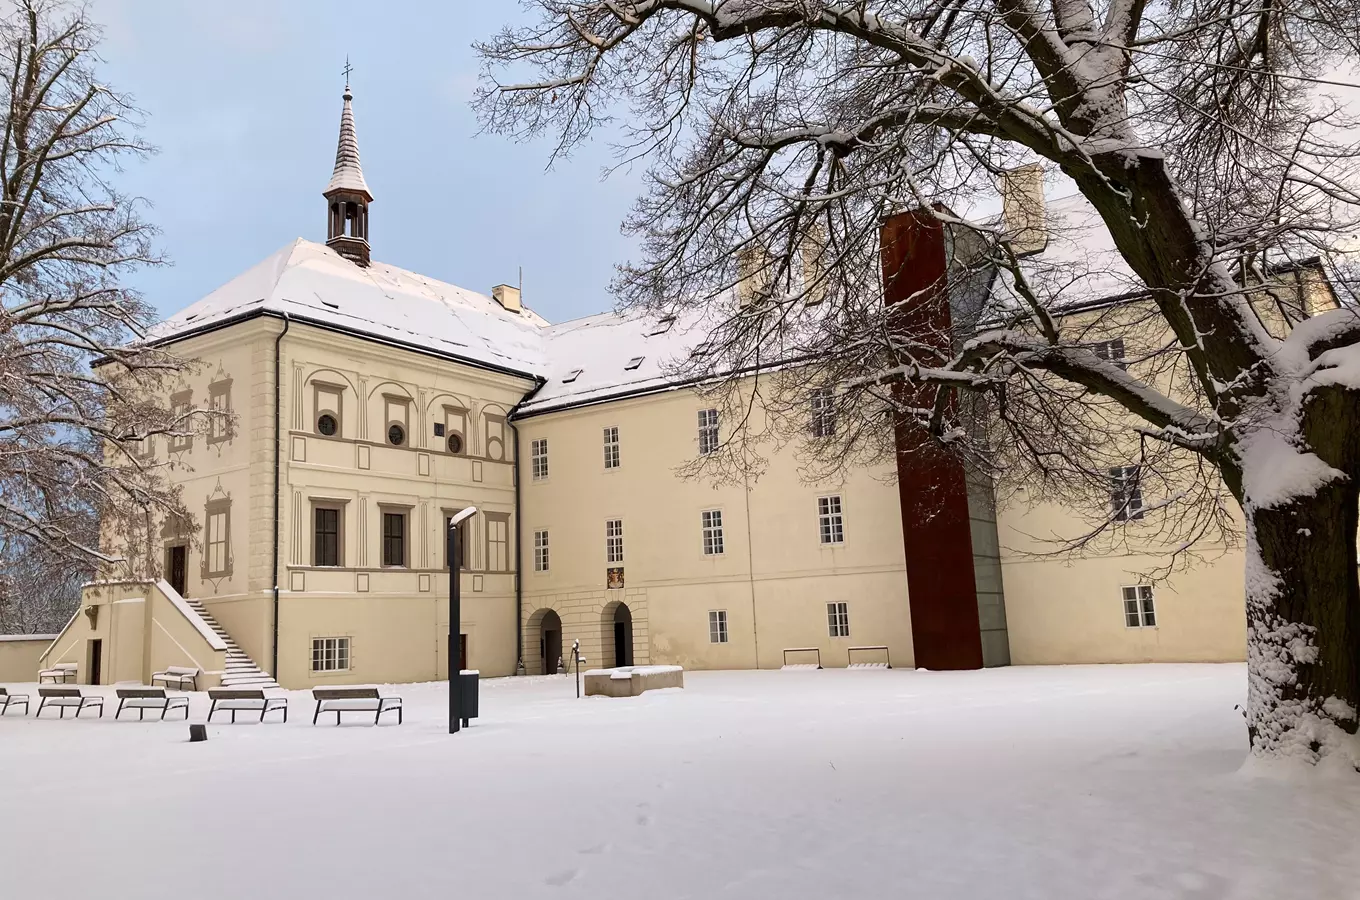 Prohlídky zámku Svijany zdarma a vánoční kvíz pro děti